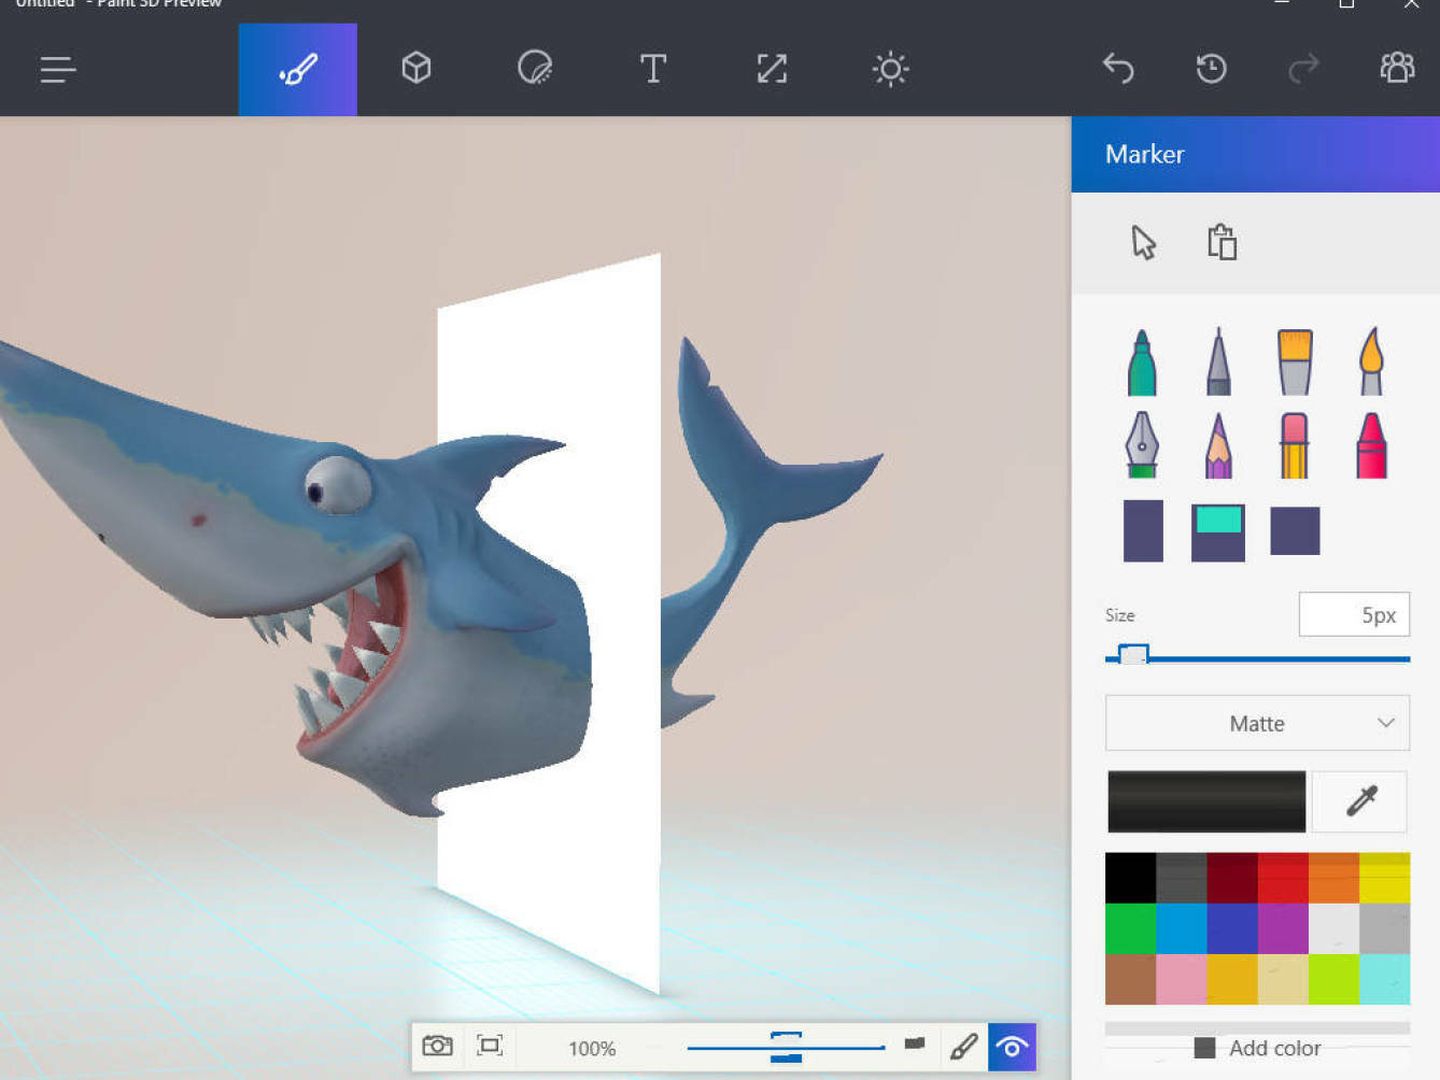 Windows anunció en abril la llegada de 'Paint 3D', una nueva aplicación de dibujo en tres dimensiones independiente del Paint tradicional que ya hacía temer por el futuro del icónico programa.